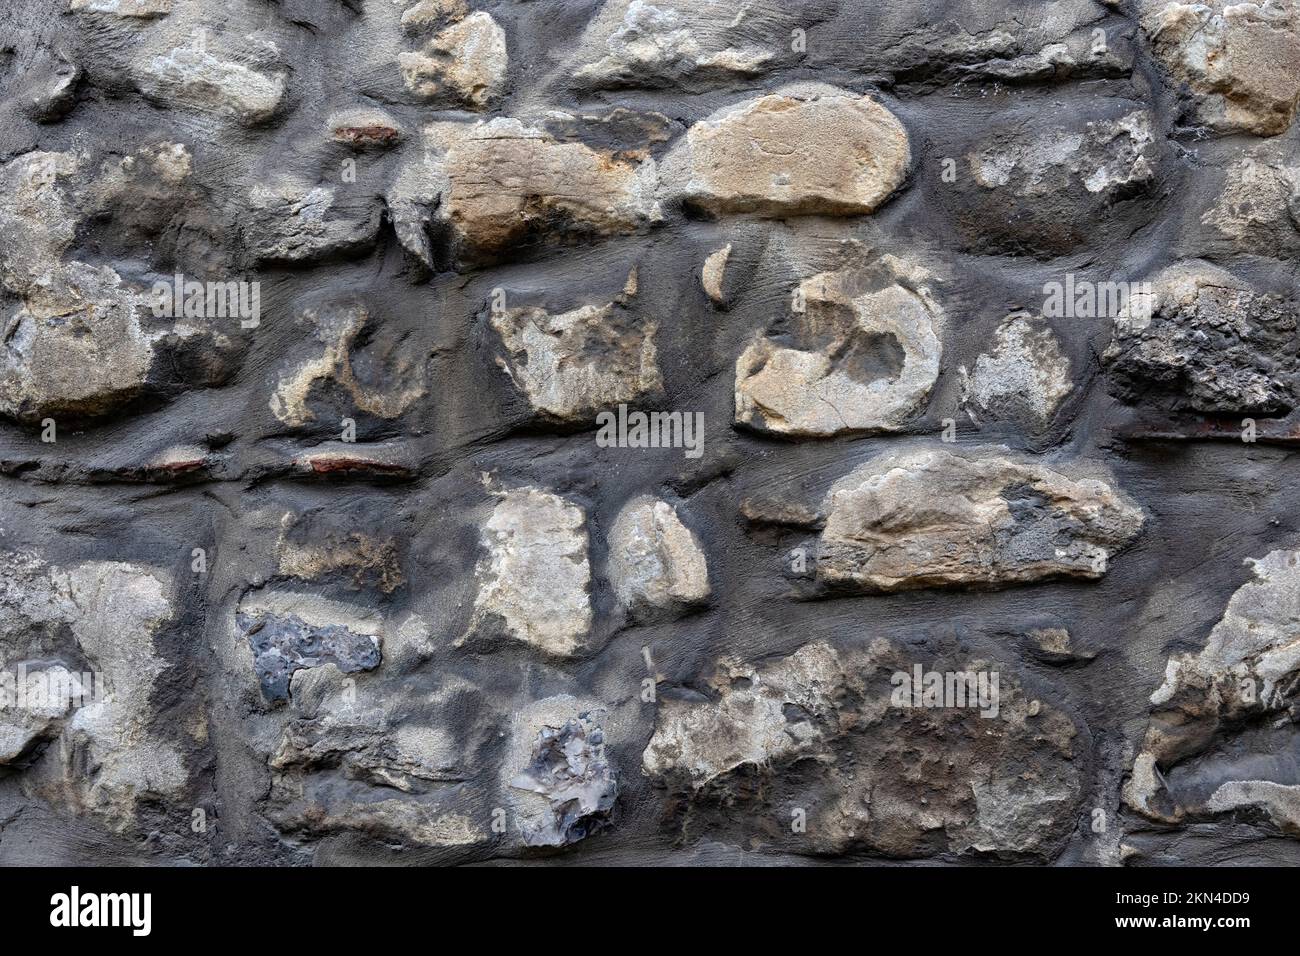 Textura de fondo de la pared construida de piedras oscuras de forma irregular Foto de stock